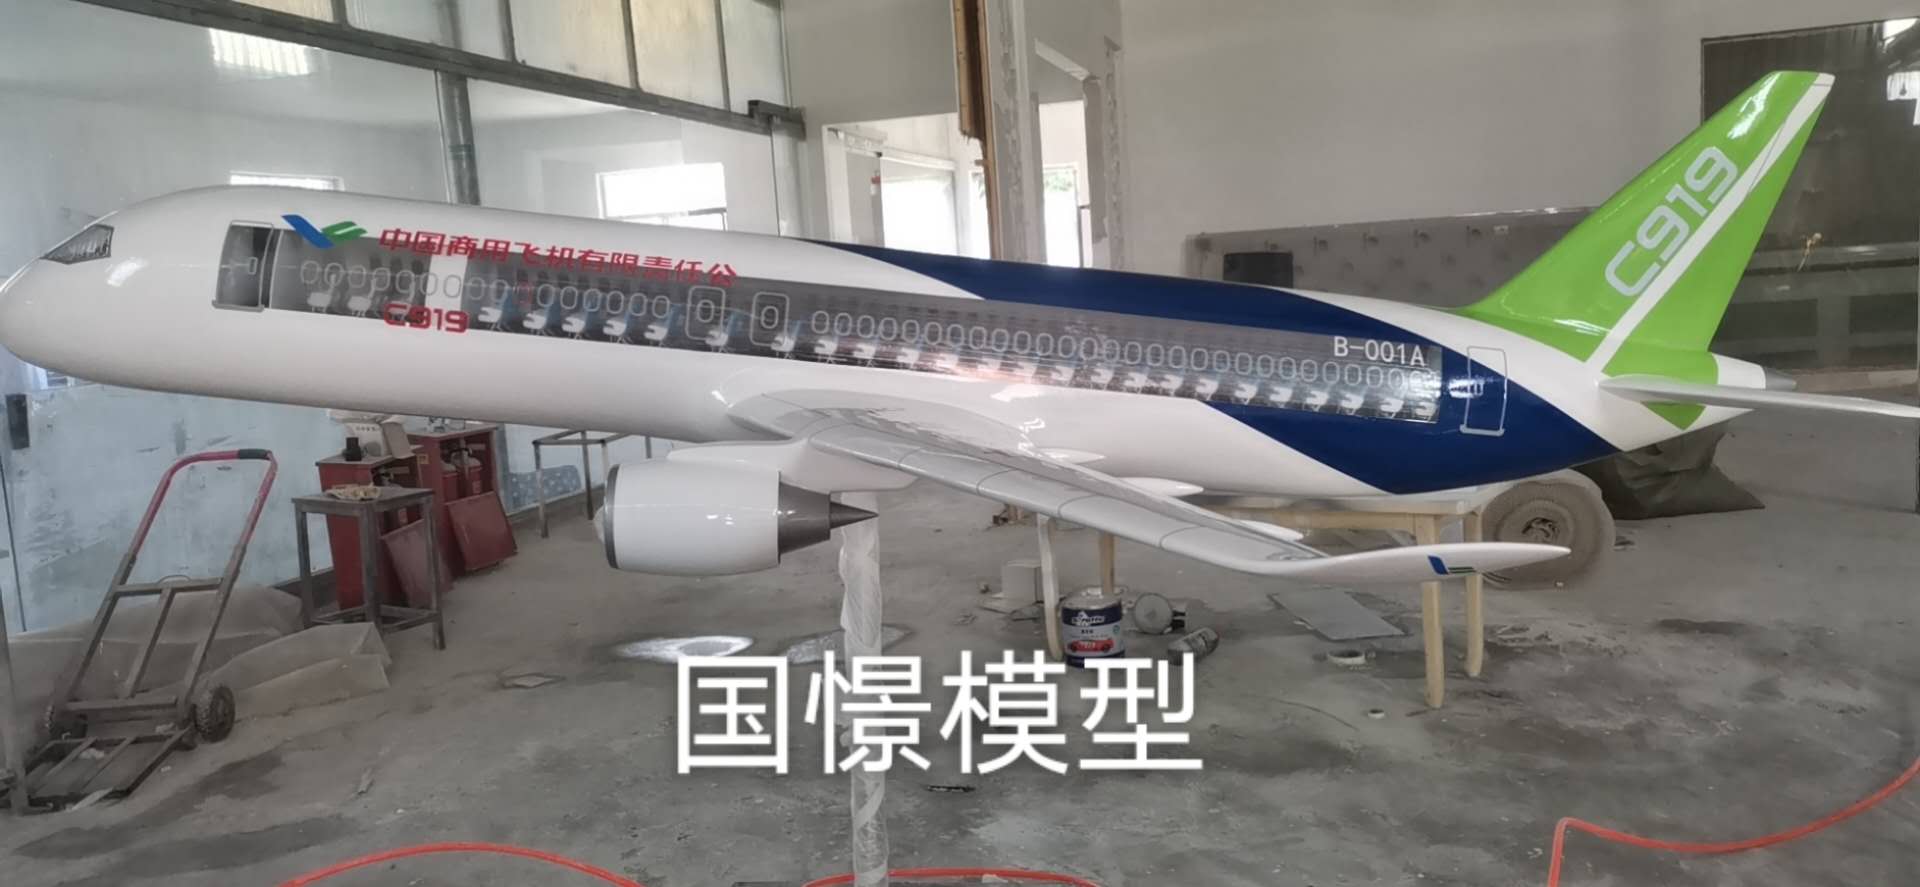 平阳县飞机模型